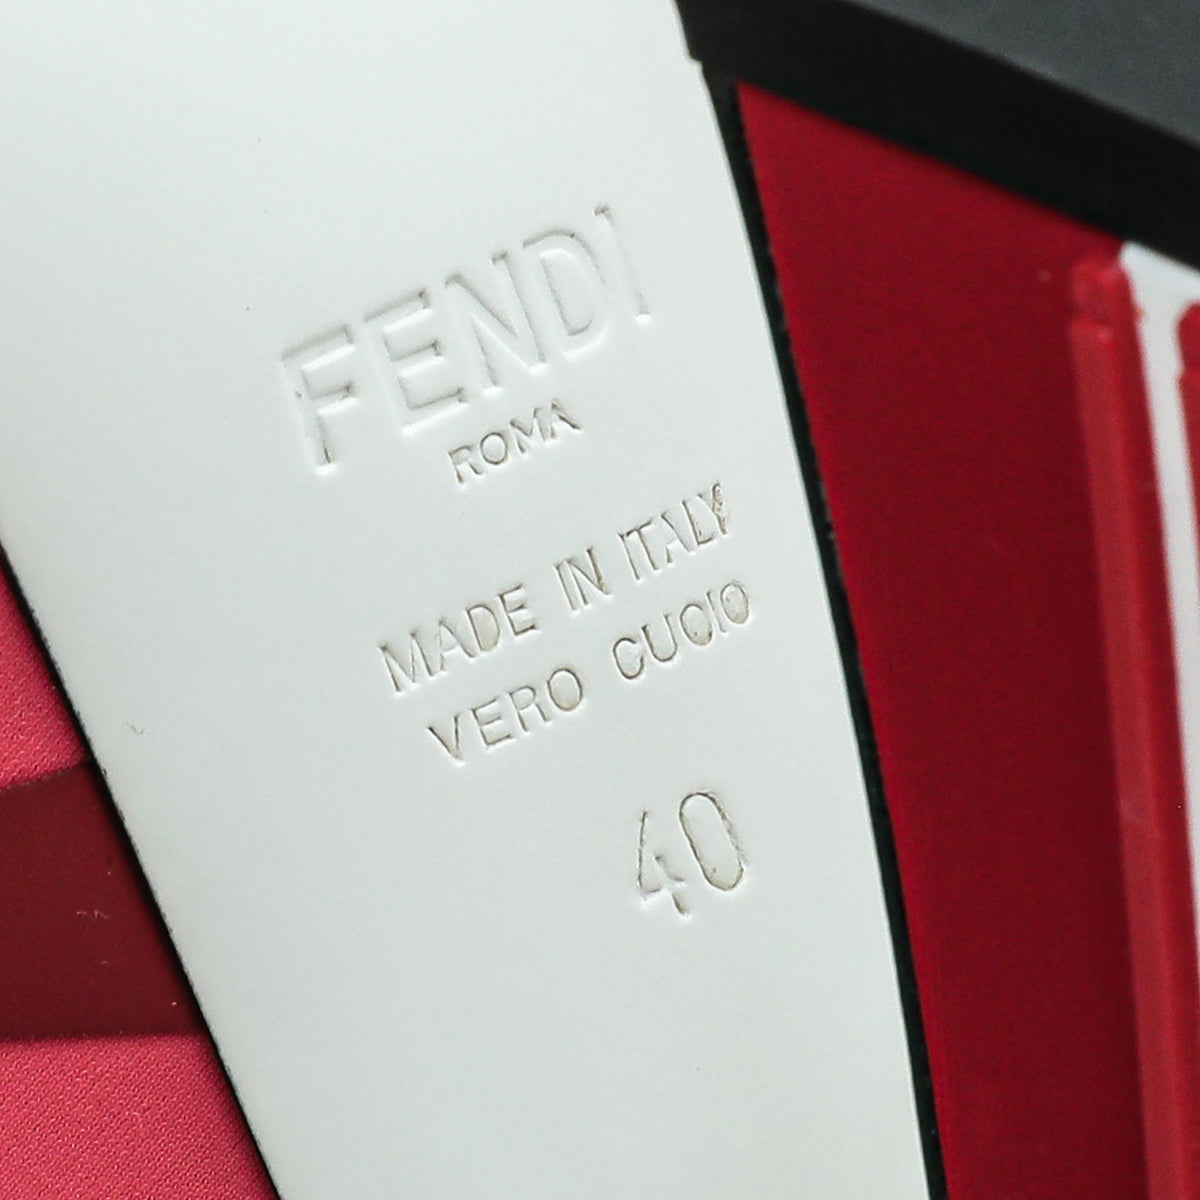 Fendi Red Multicolor Colibri Appliquéd Mesh And Neoprene Sandal 40